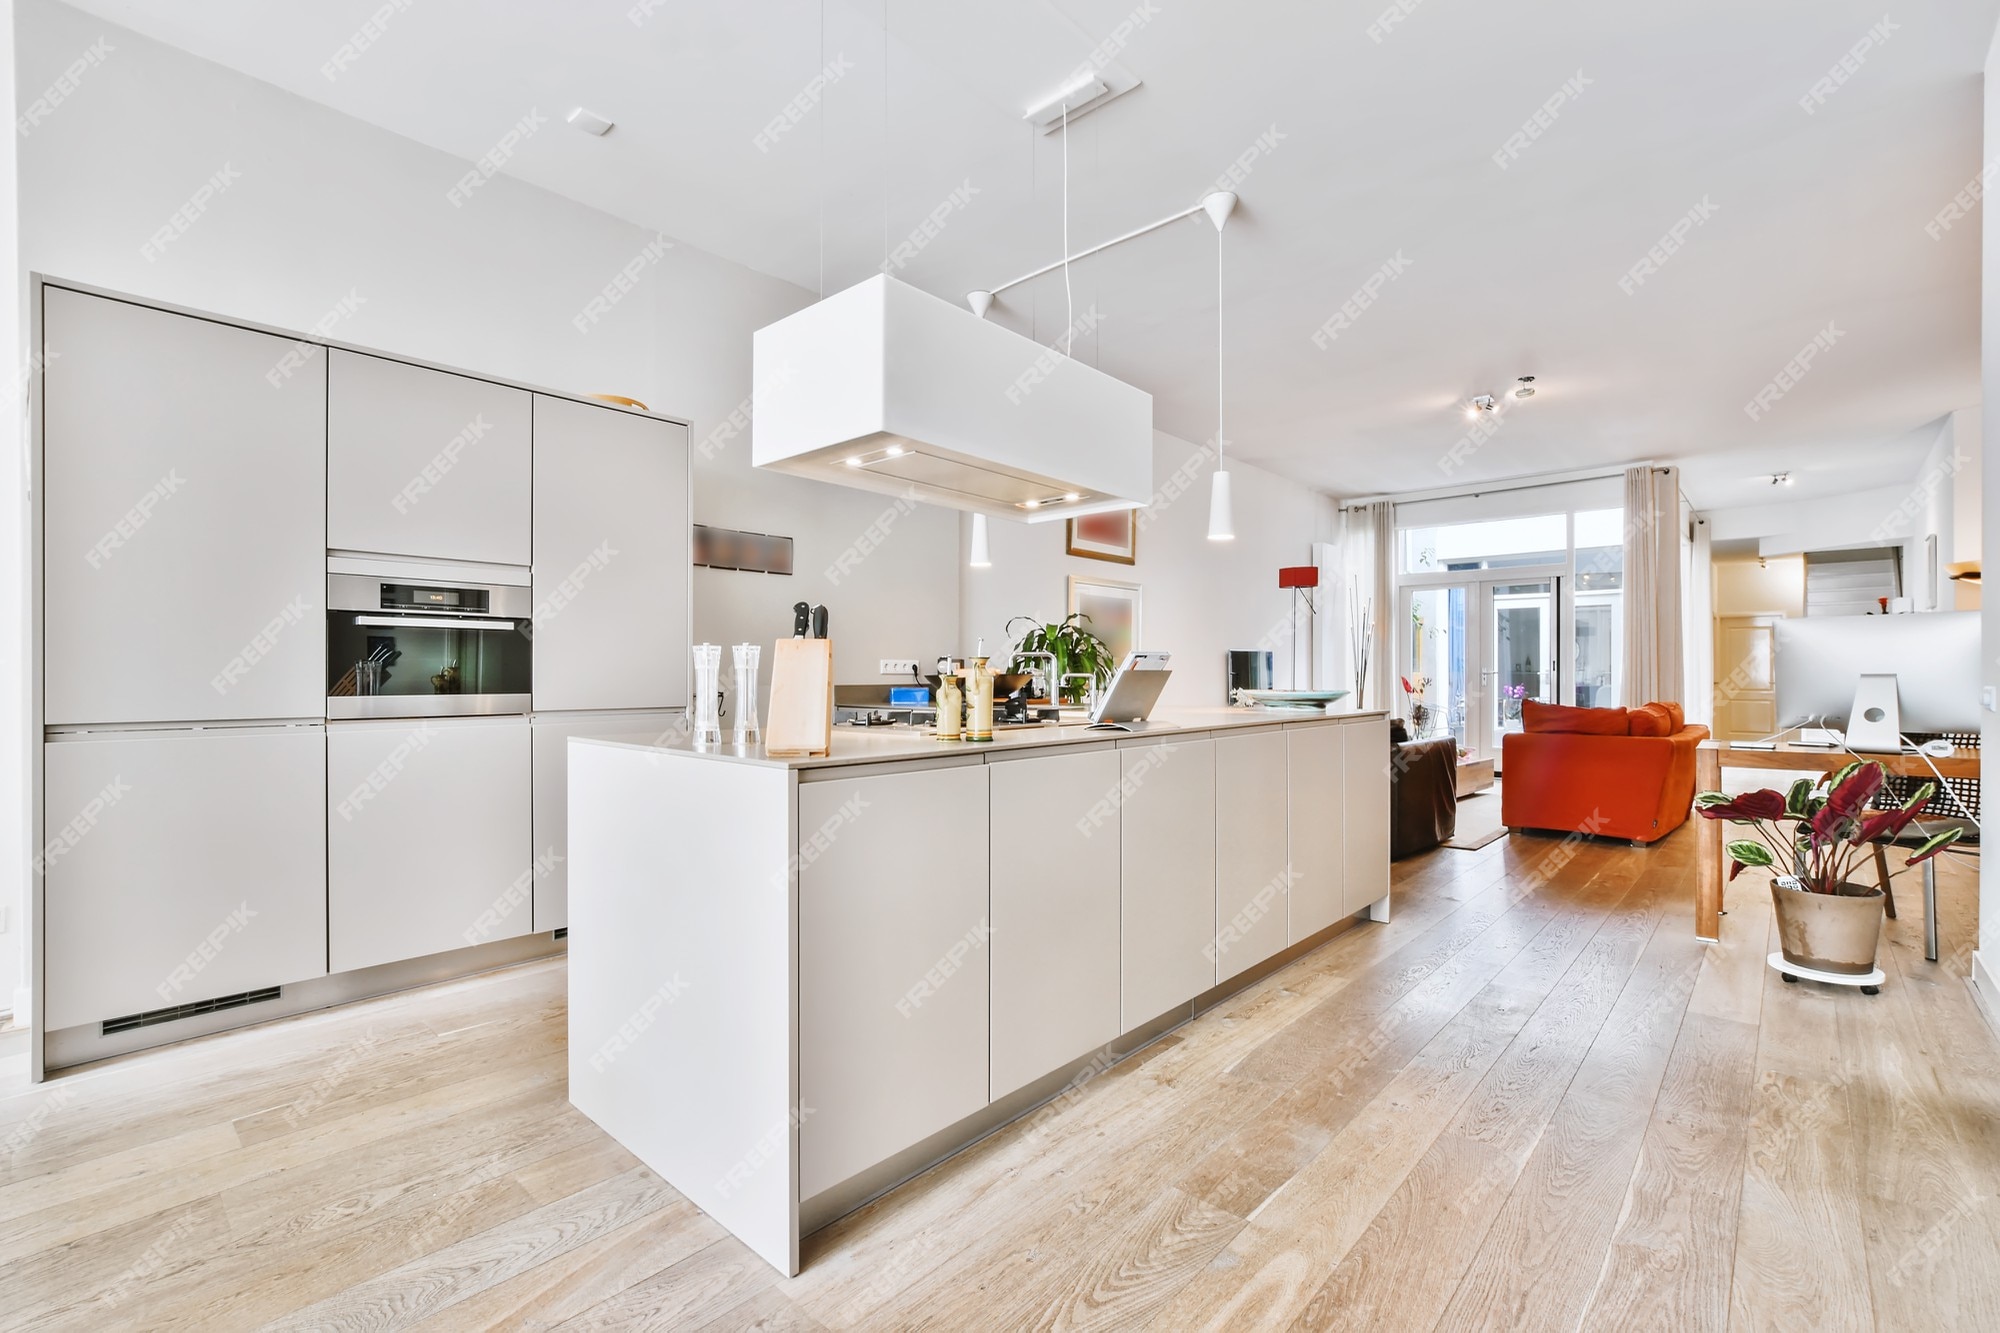 Schiereiland Onvervangbaar wenselijk Eigentijdse witte keukenkasten met inbouwapparatuur en hangende afzuigkap  in ruime woning | Premium Foto